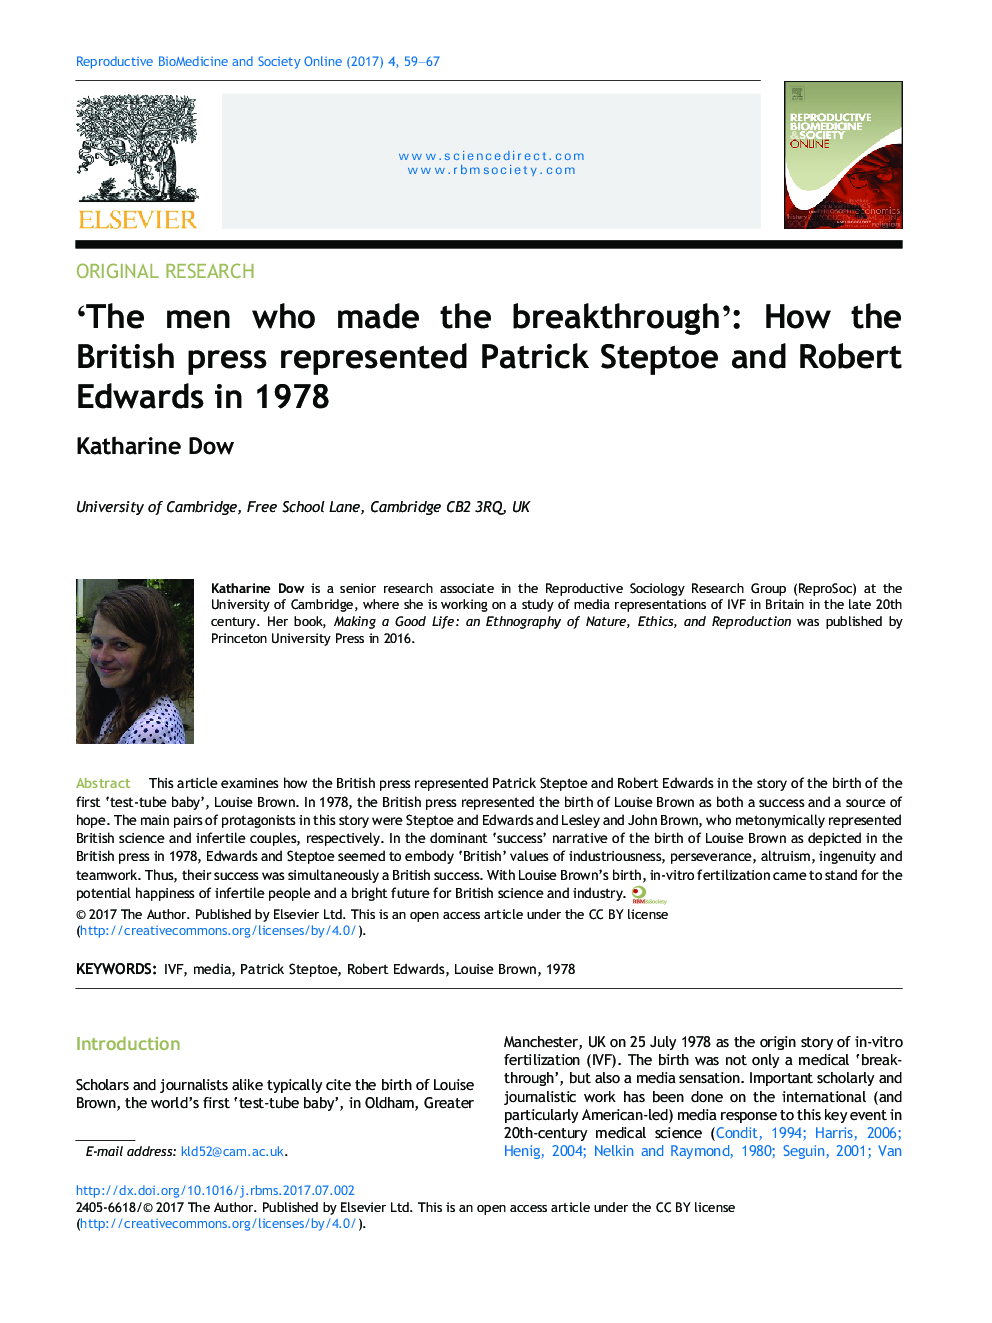 مردانی که ساخته شده است که دستیابی به موفقیت: چگونه مطبوعات بریتانیا در سال 1978 پاتریک استپتو و رابرت ادواردز را معرفی کردند